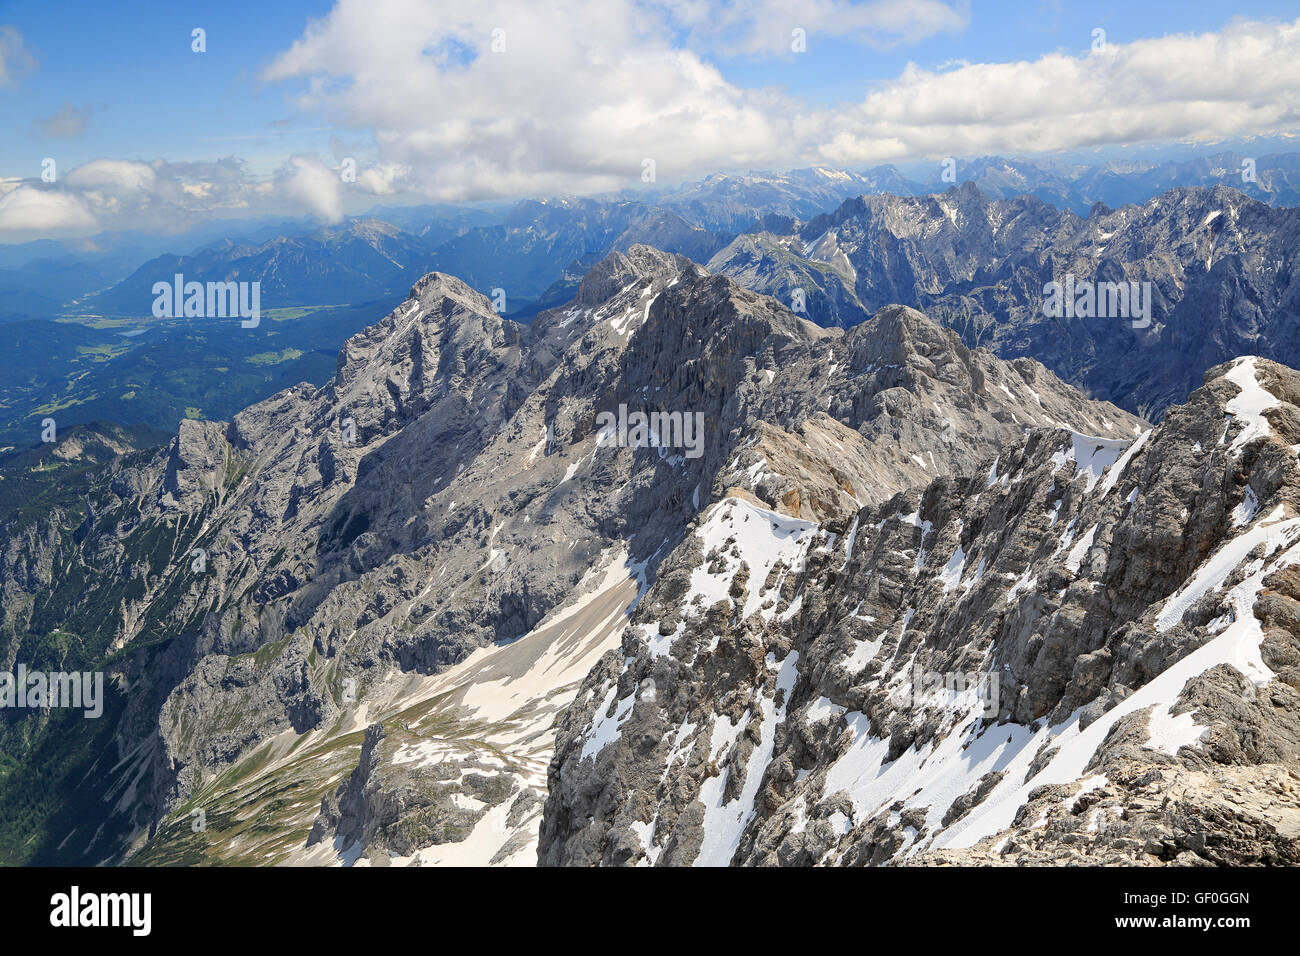 Alpi vista dalla cima del massiccio dello Zugspitze, Germania. Il massiccio dello Zugspitze, a 2.962 m sopra il livello del mare. Foto Stock